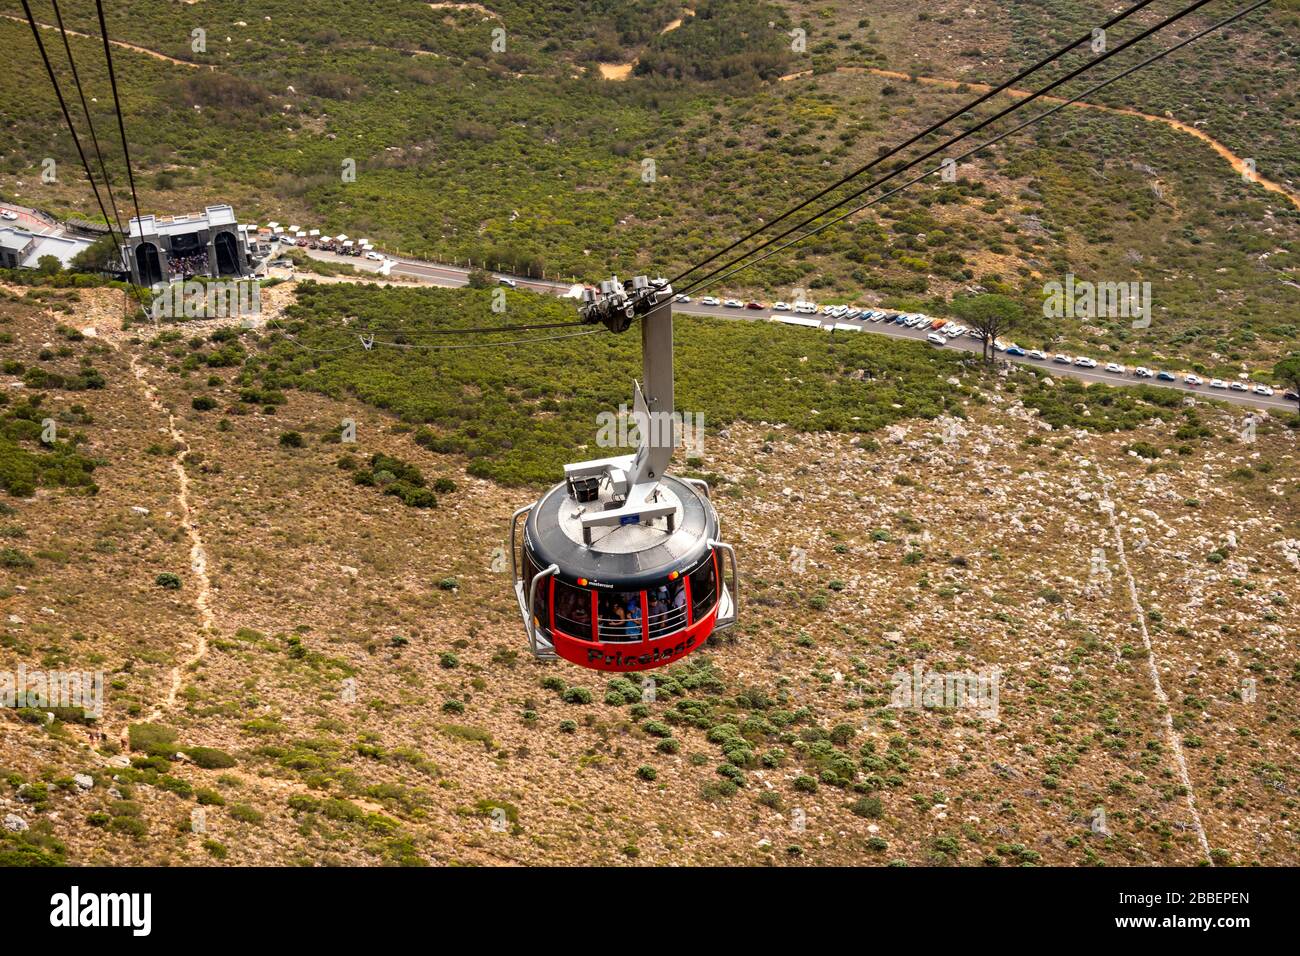 Sud Africa, Città del Capo, Tafelberg Road, Table Mountain Aerial Cableway, funivia rotante Rotair realizzata in svizzera Foto Stock